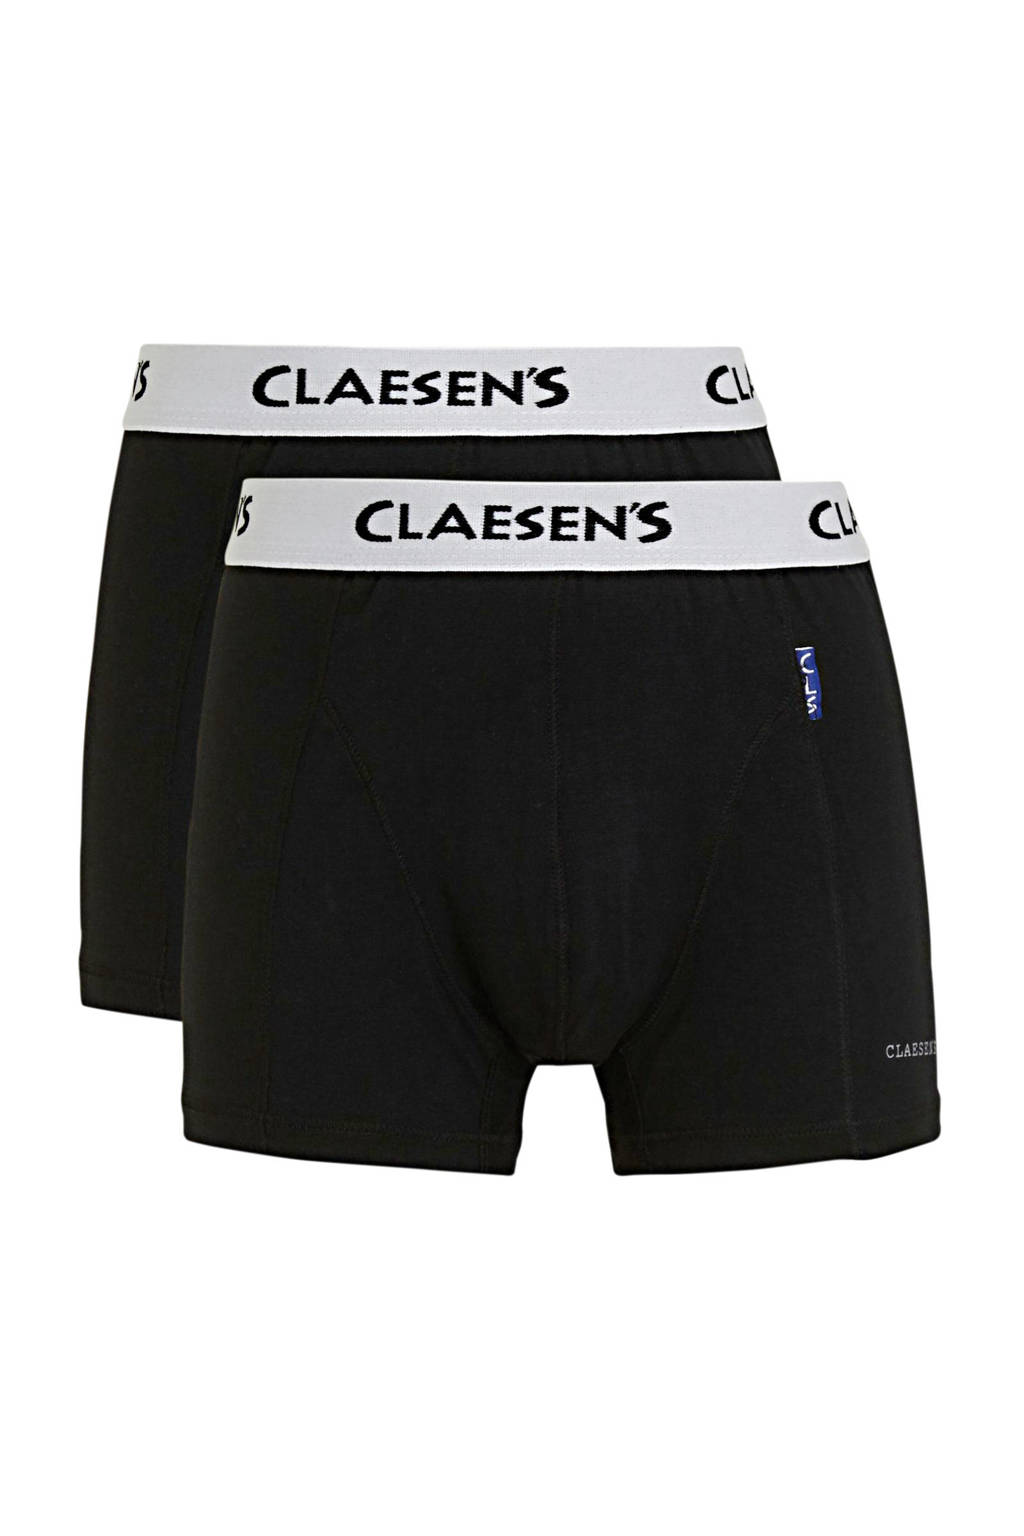 Claesen's   boxershort - set van 2 zwart/wit, Zwart/wit